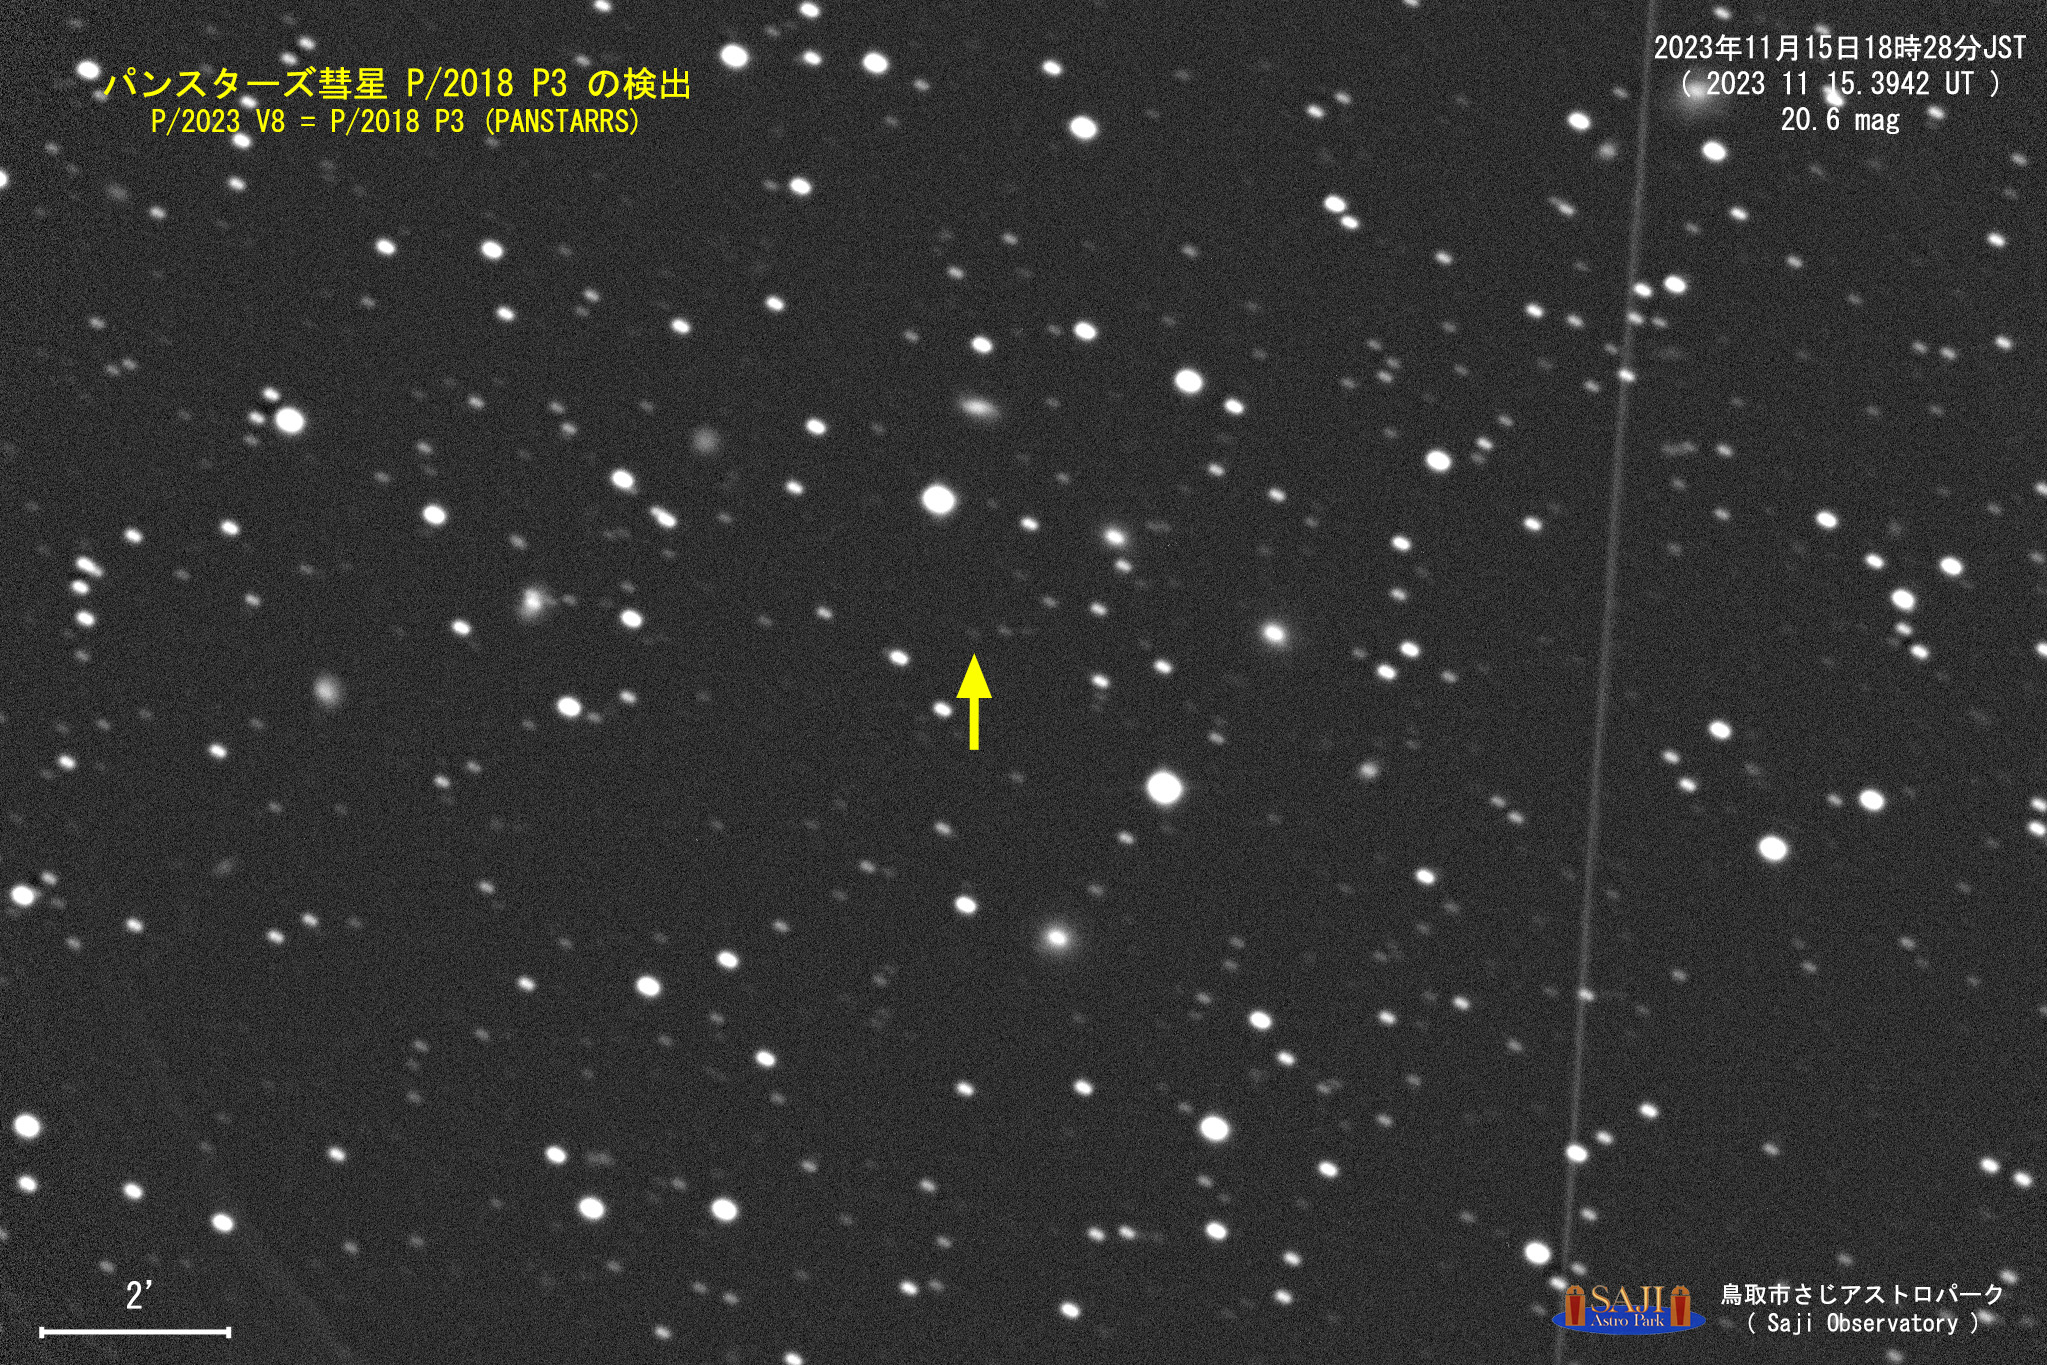 パンスターズ彗星 P/2018 P3の検出画像